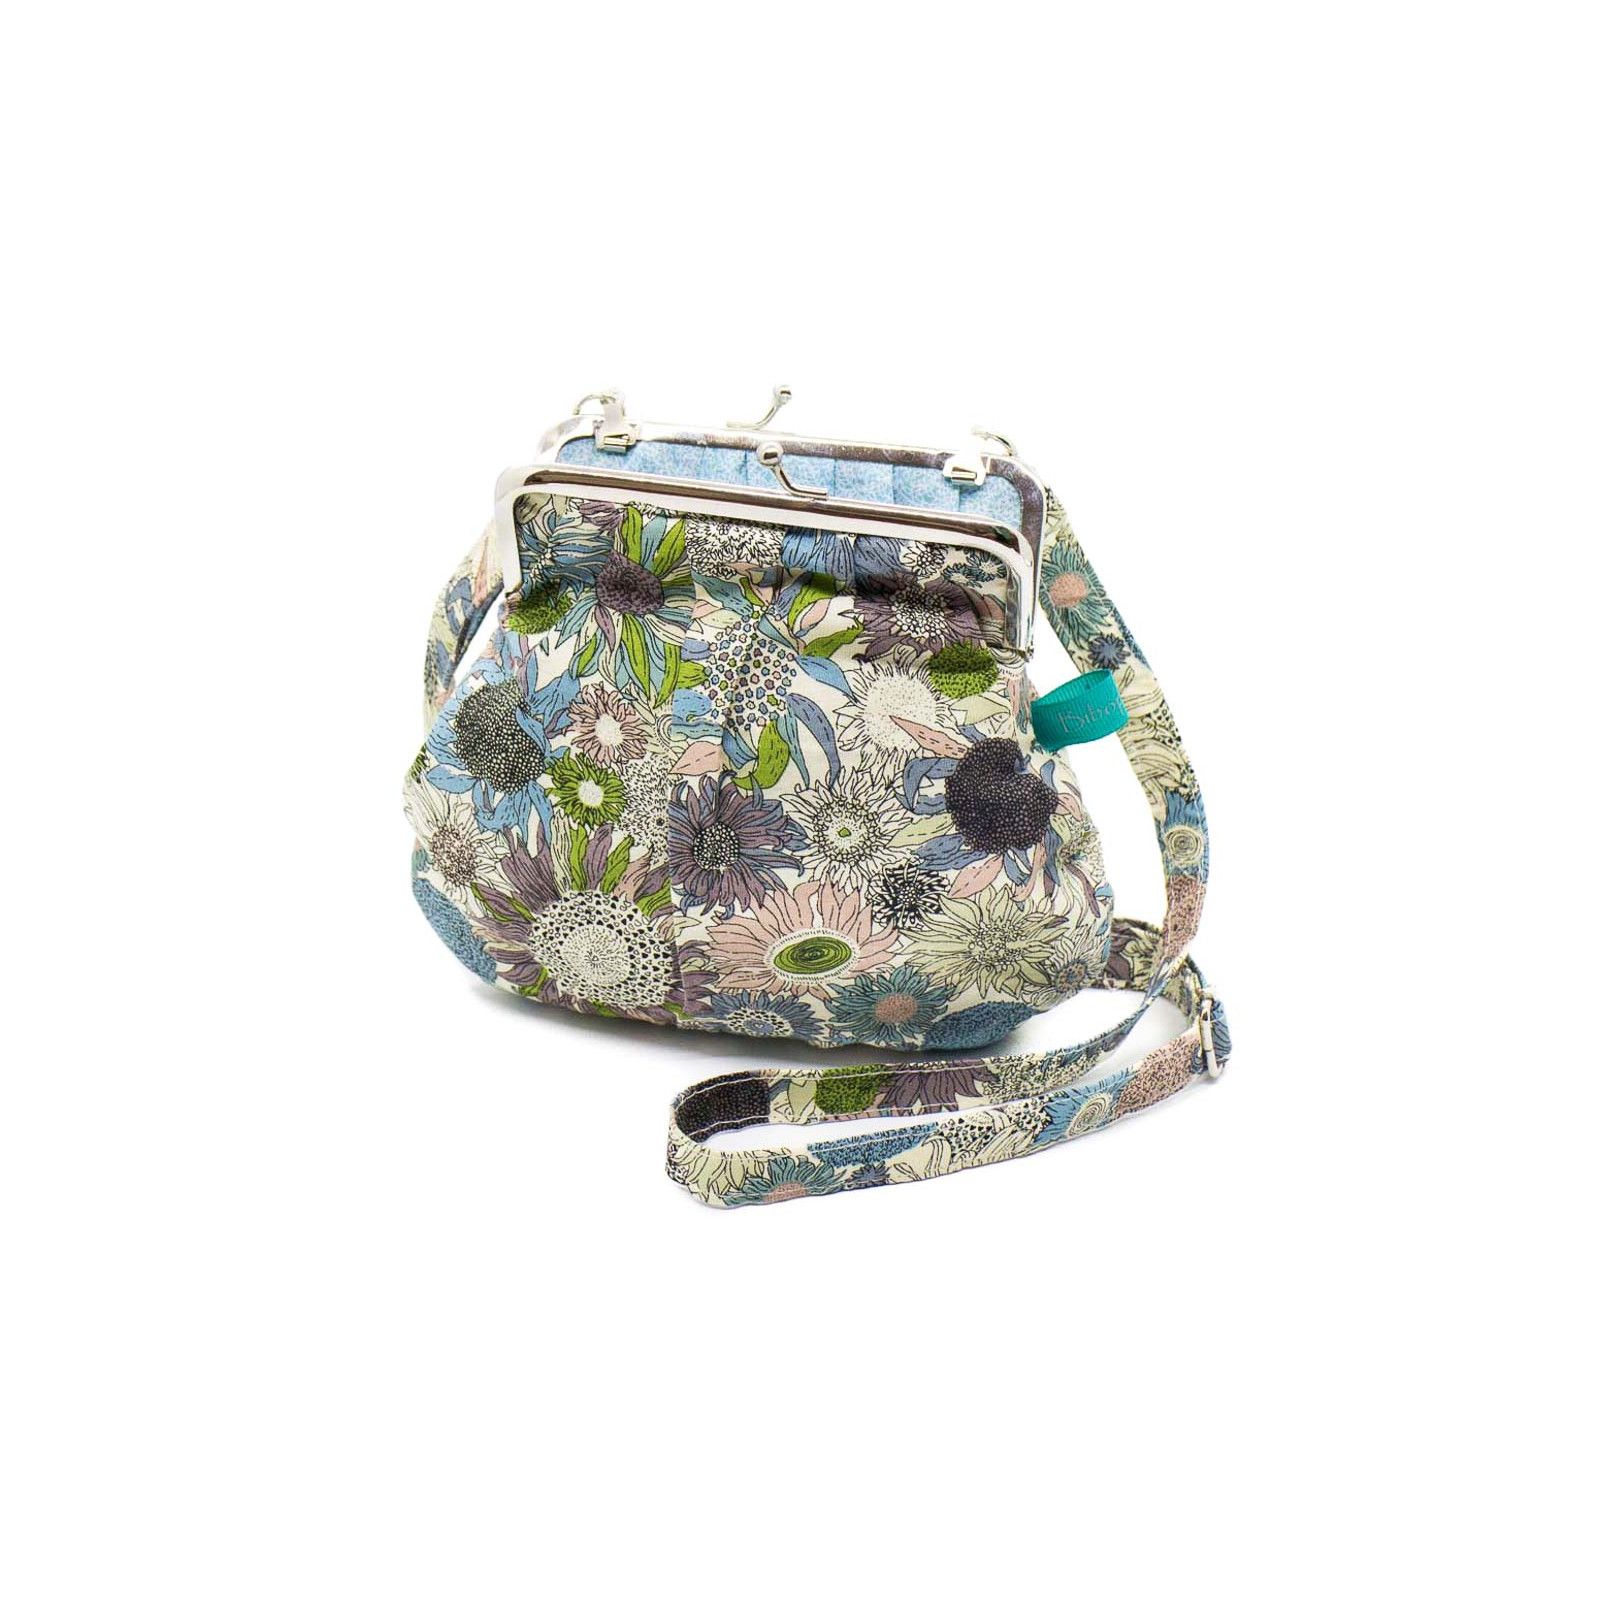 Petit sac rétro à clip coton bleu et vert olive à fleurs